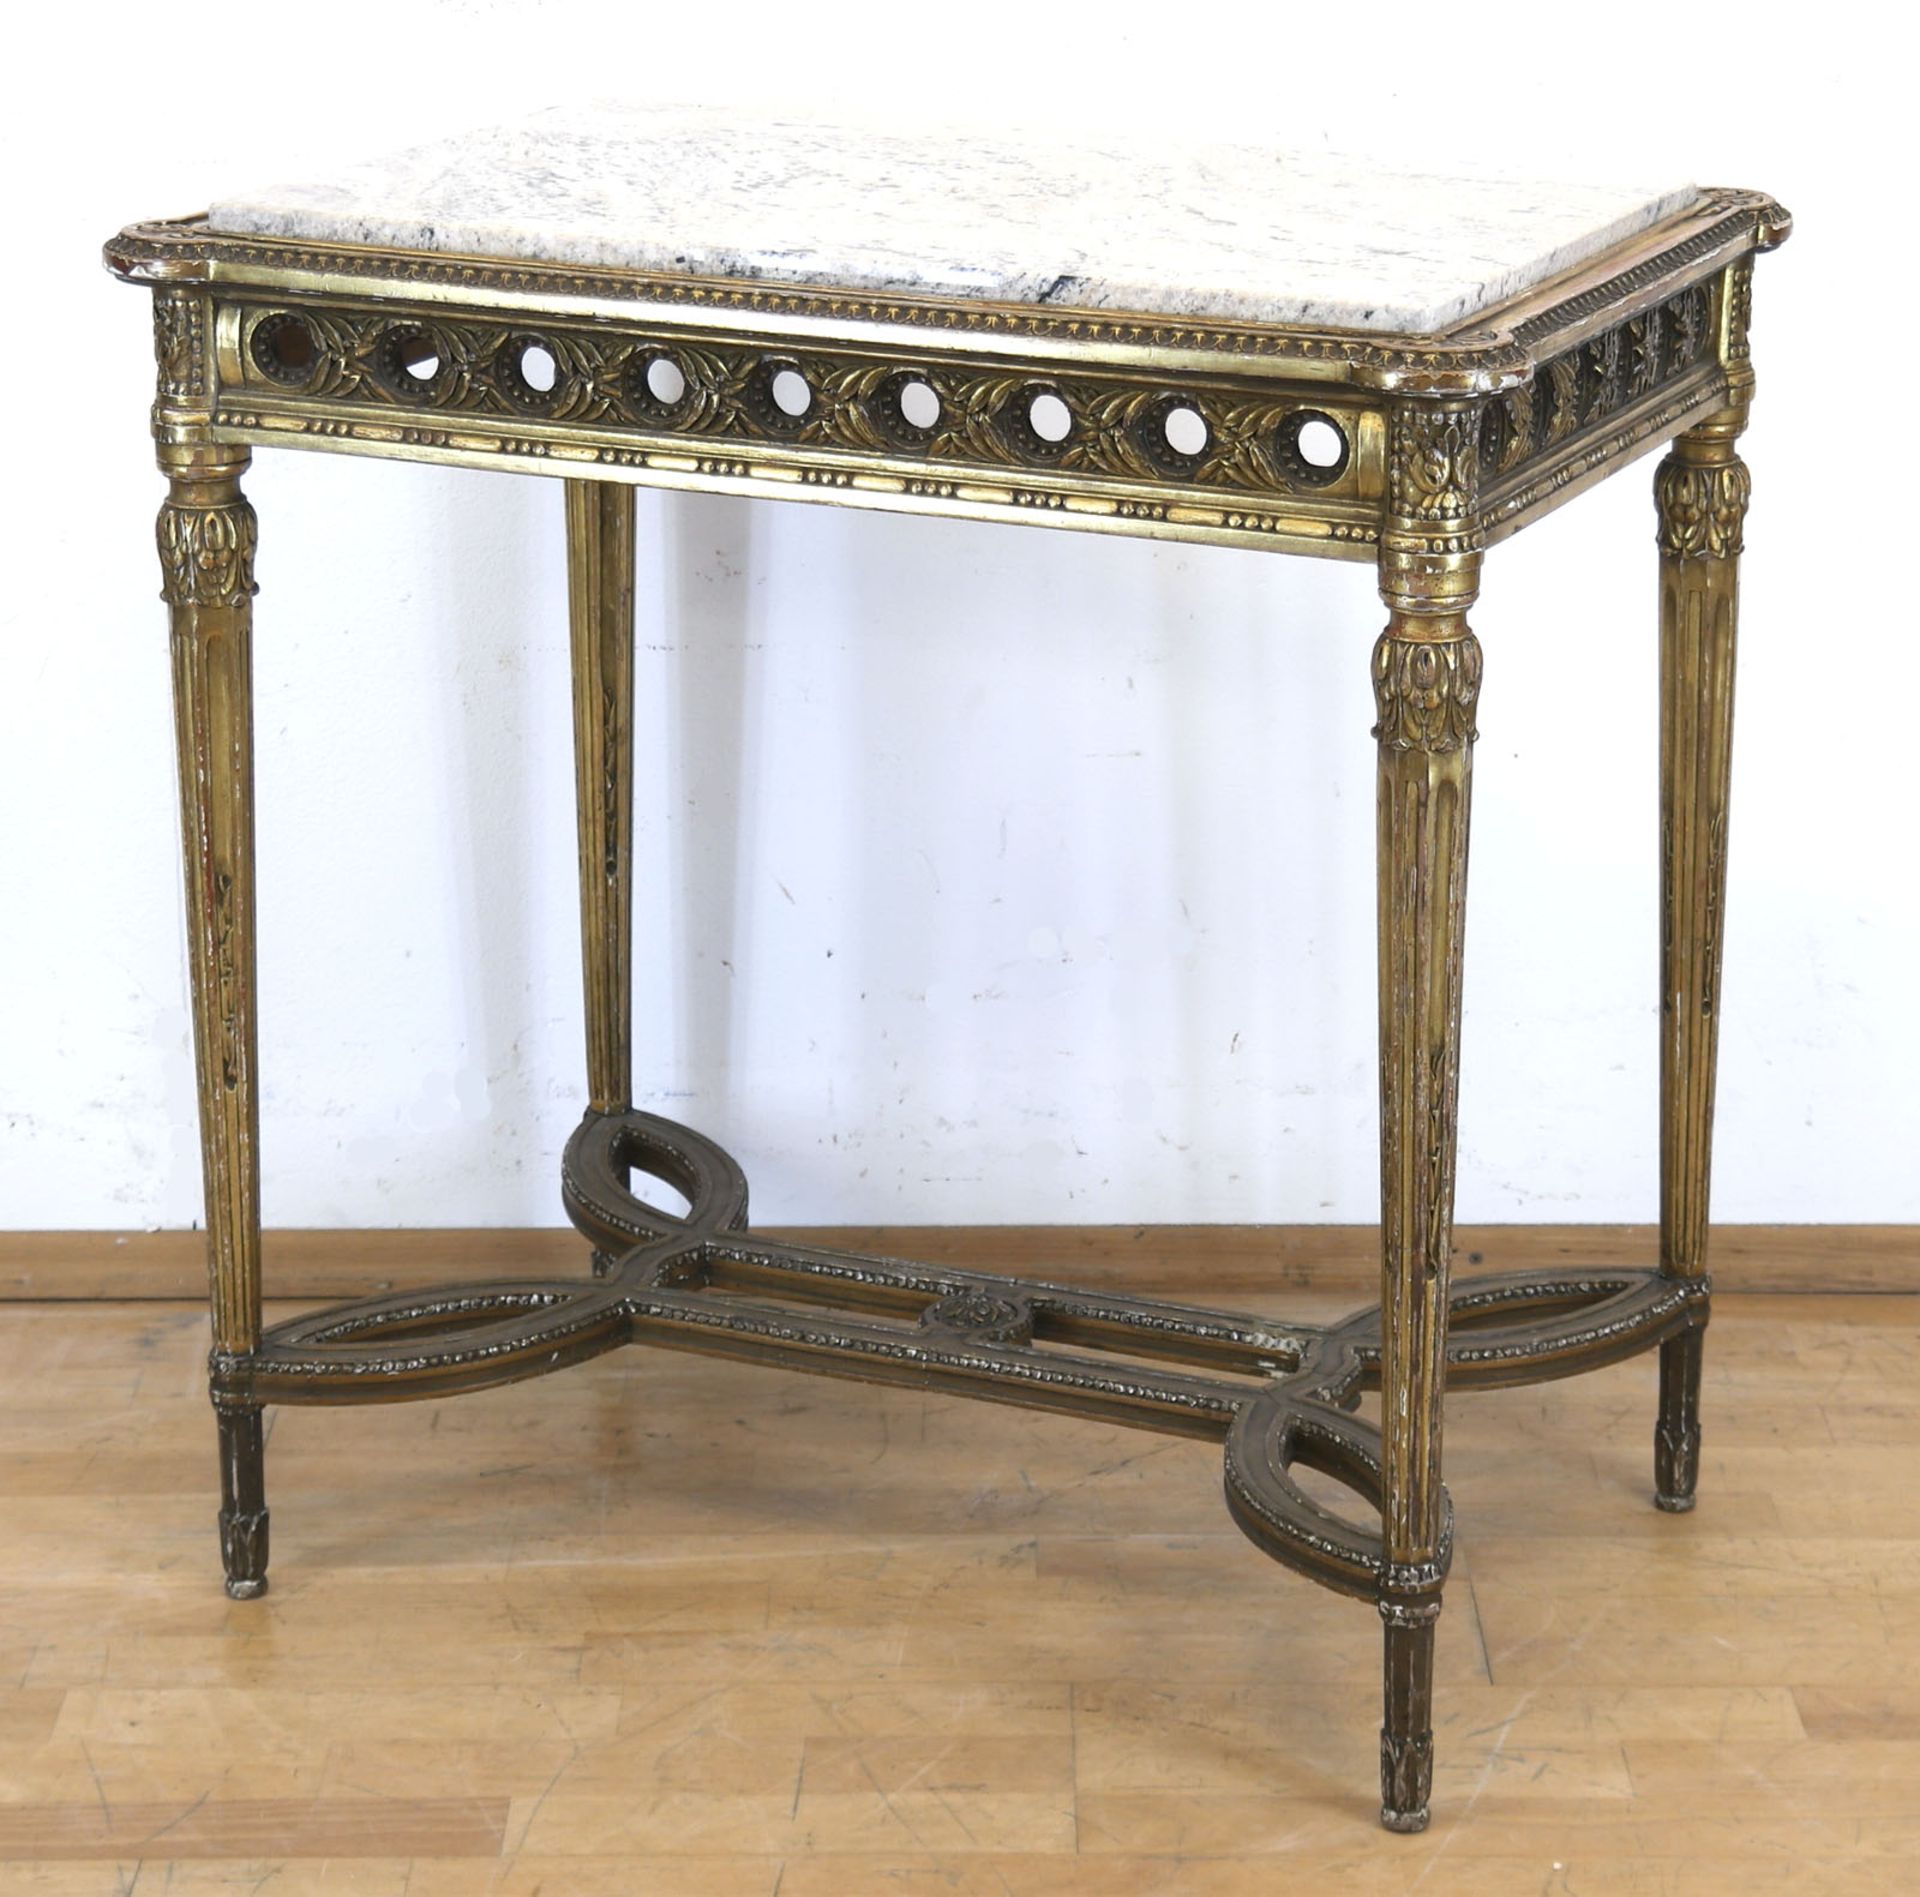 Tisch im Louis-Quinze-Stil, Frankreich um 1880, Holz mit Stuckverzierungen, gold gefaßt, über kanne